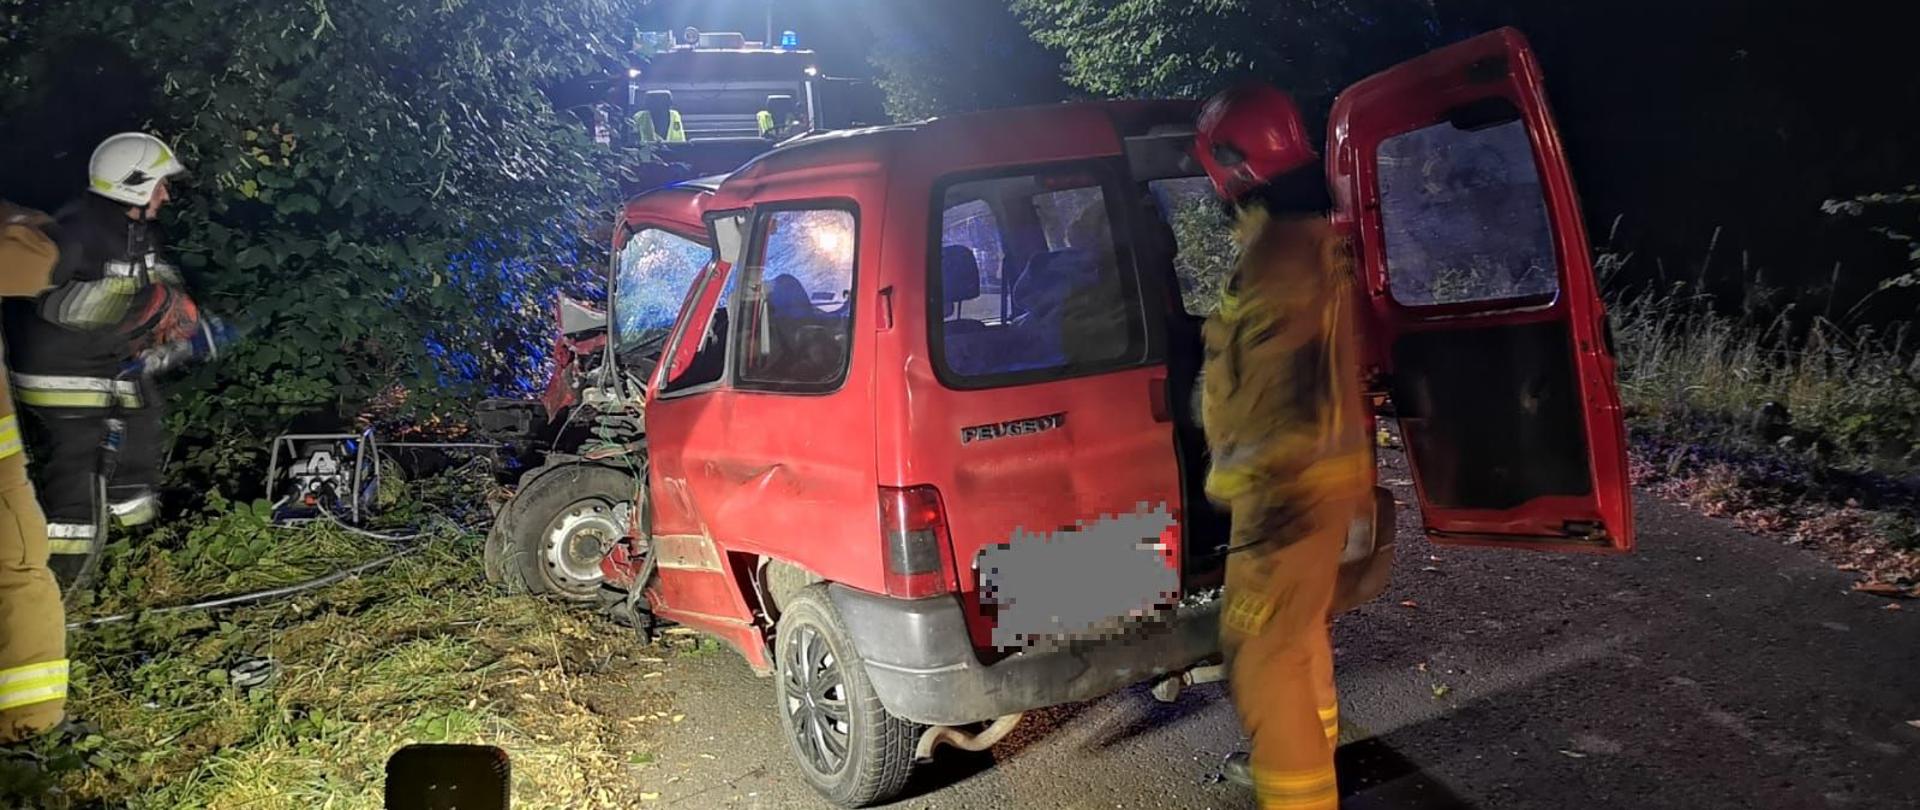 Noc, samochód strażacki oświetla teren, widoczny czerwony samochód, który ma rozbity przód.